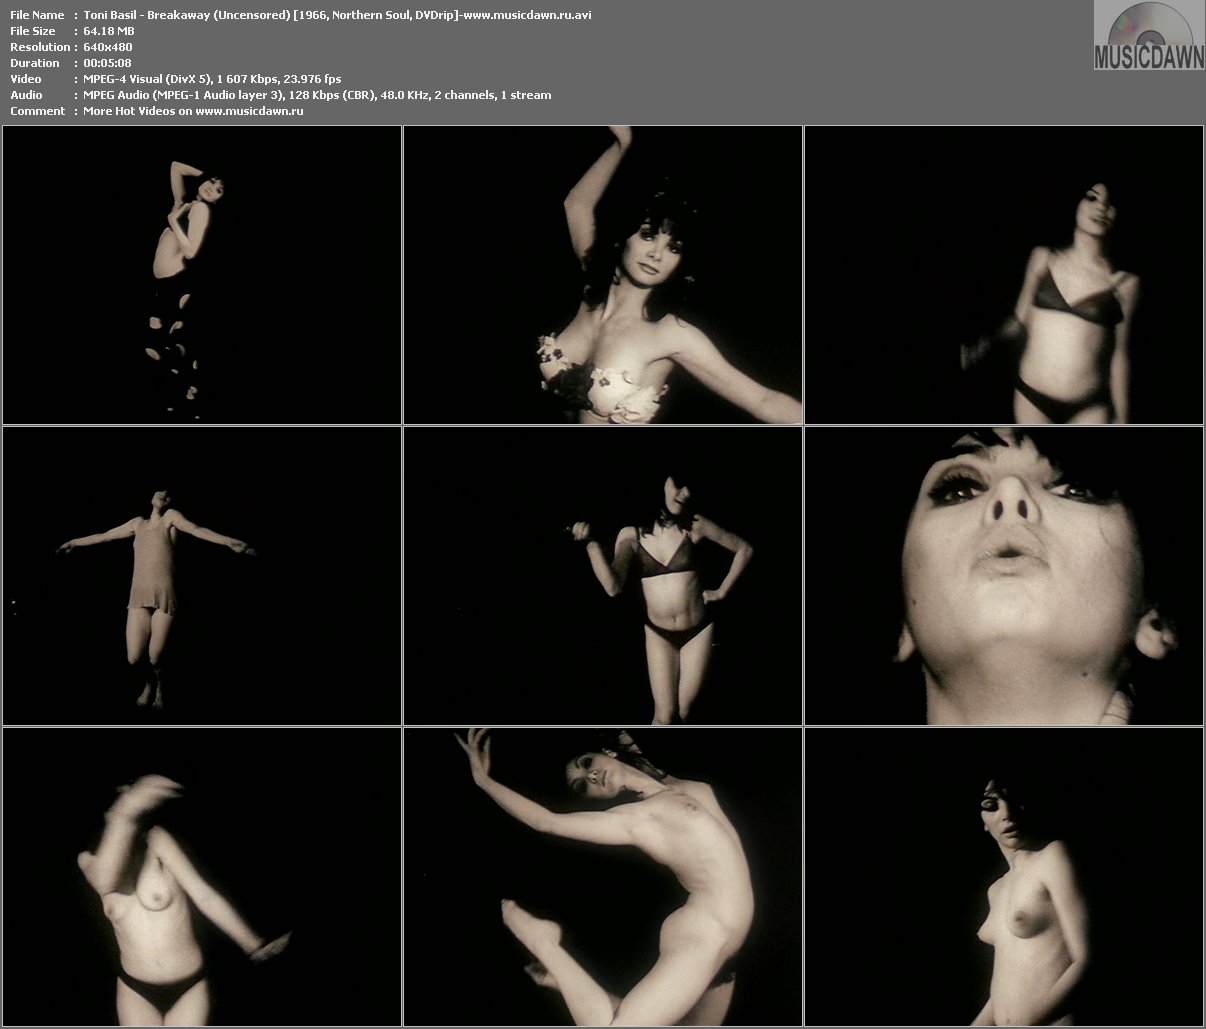 Toni Basil nude pics.